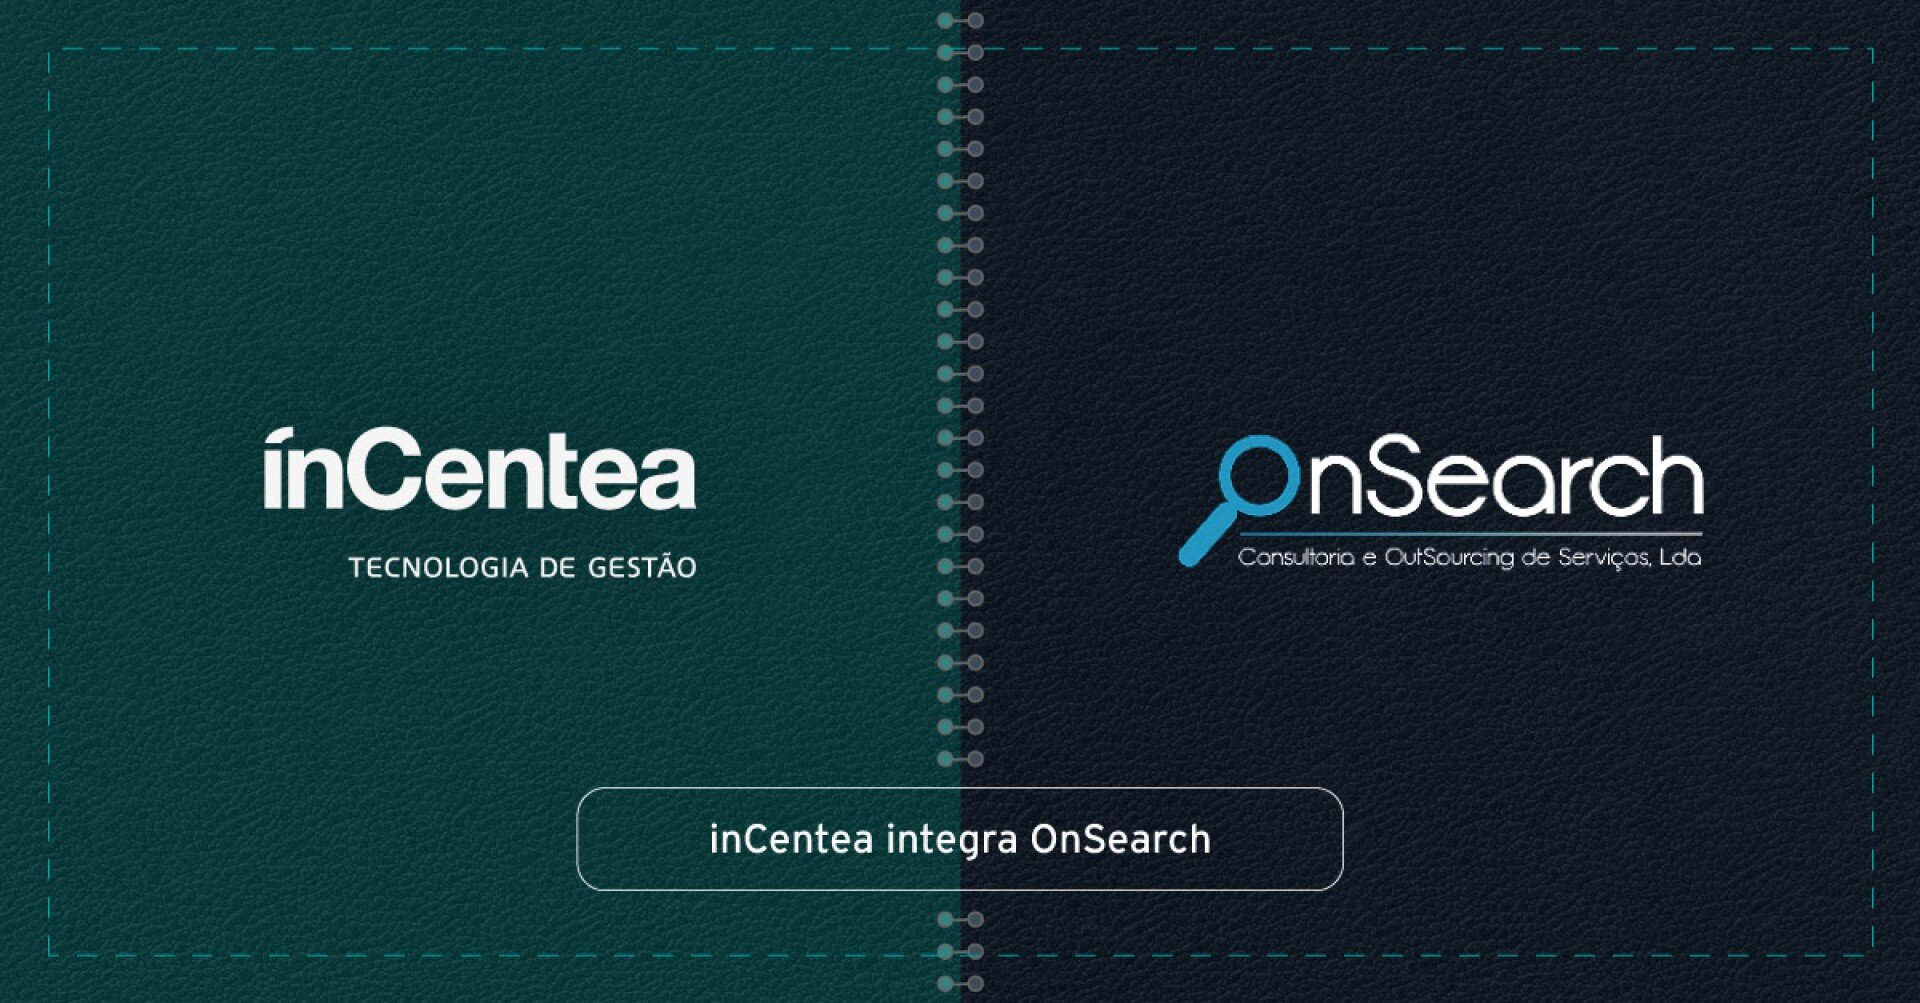 inCentea refuerza el portafolio de soluciones con la integración de OnSearch